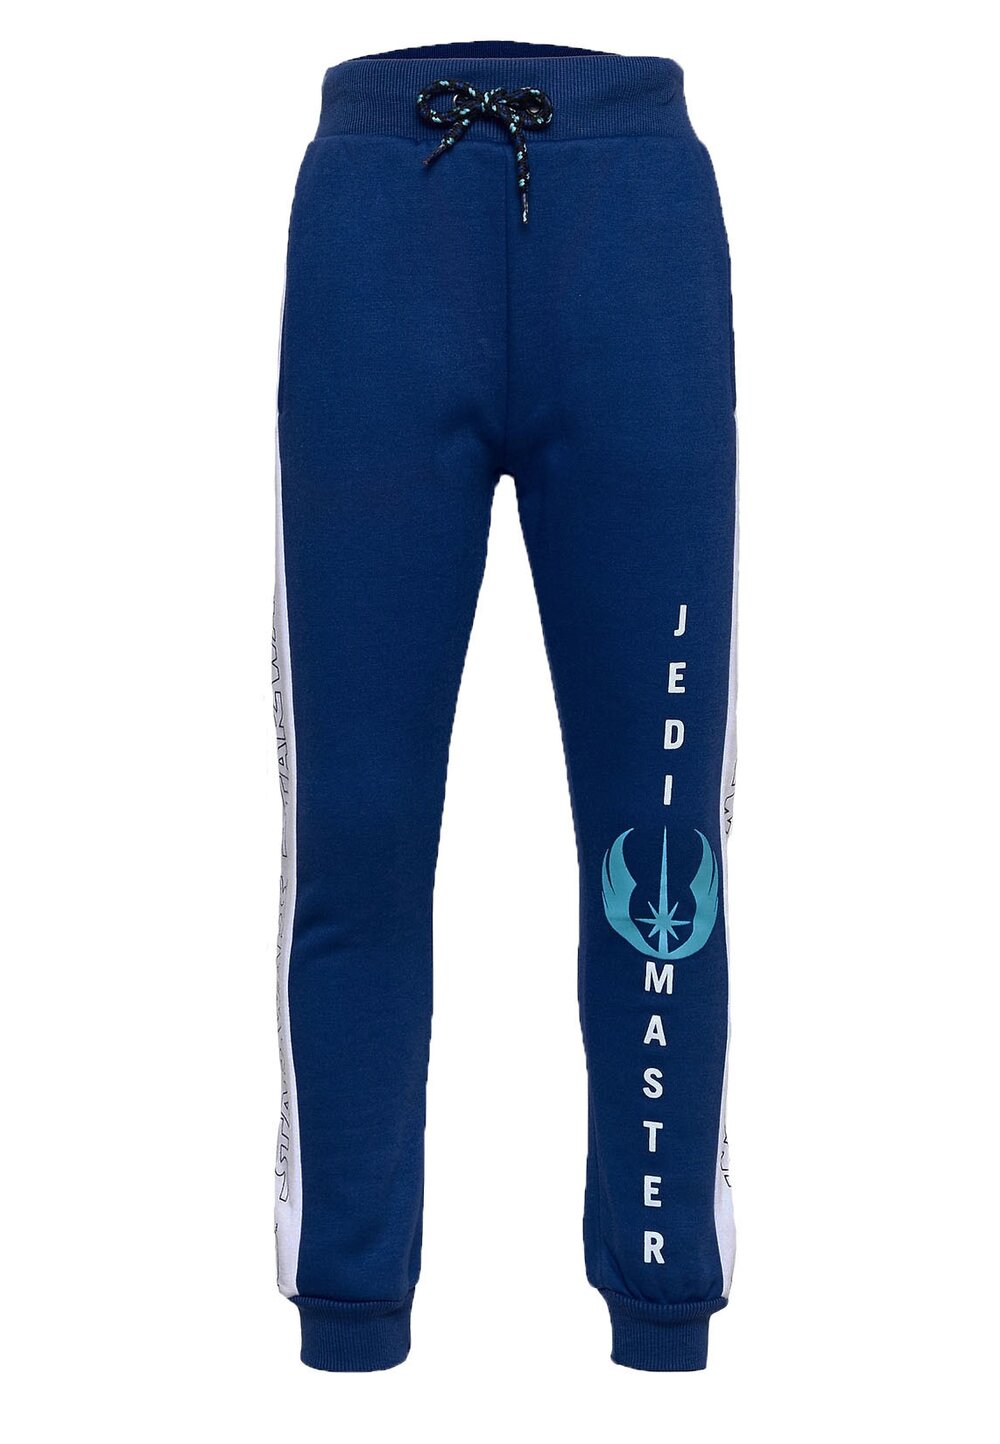 Pantaloni trening, Star Wars, albastri